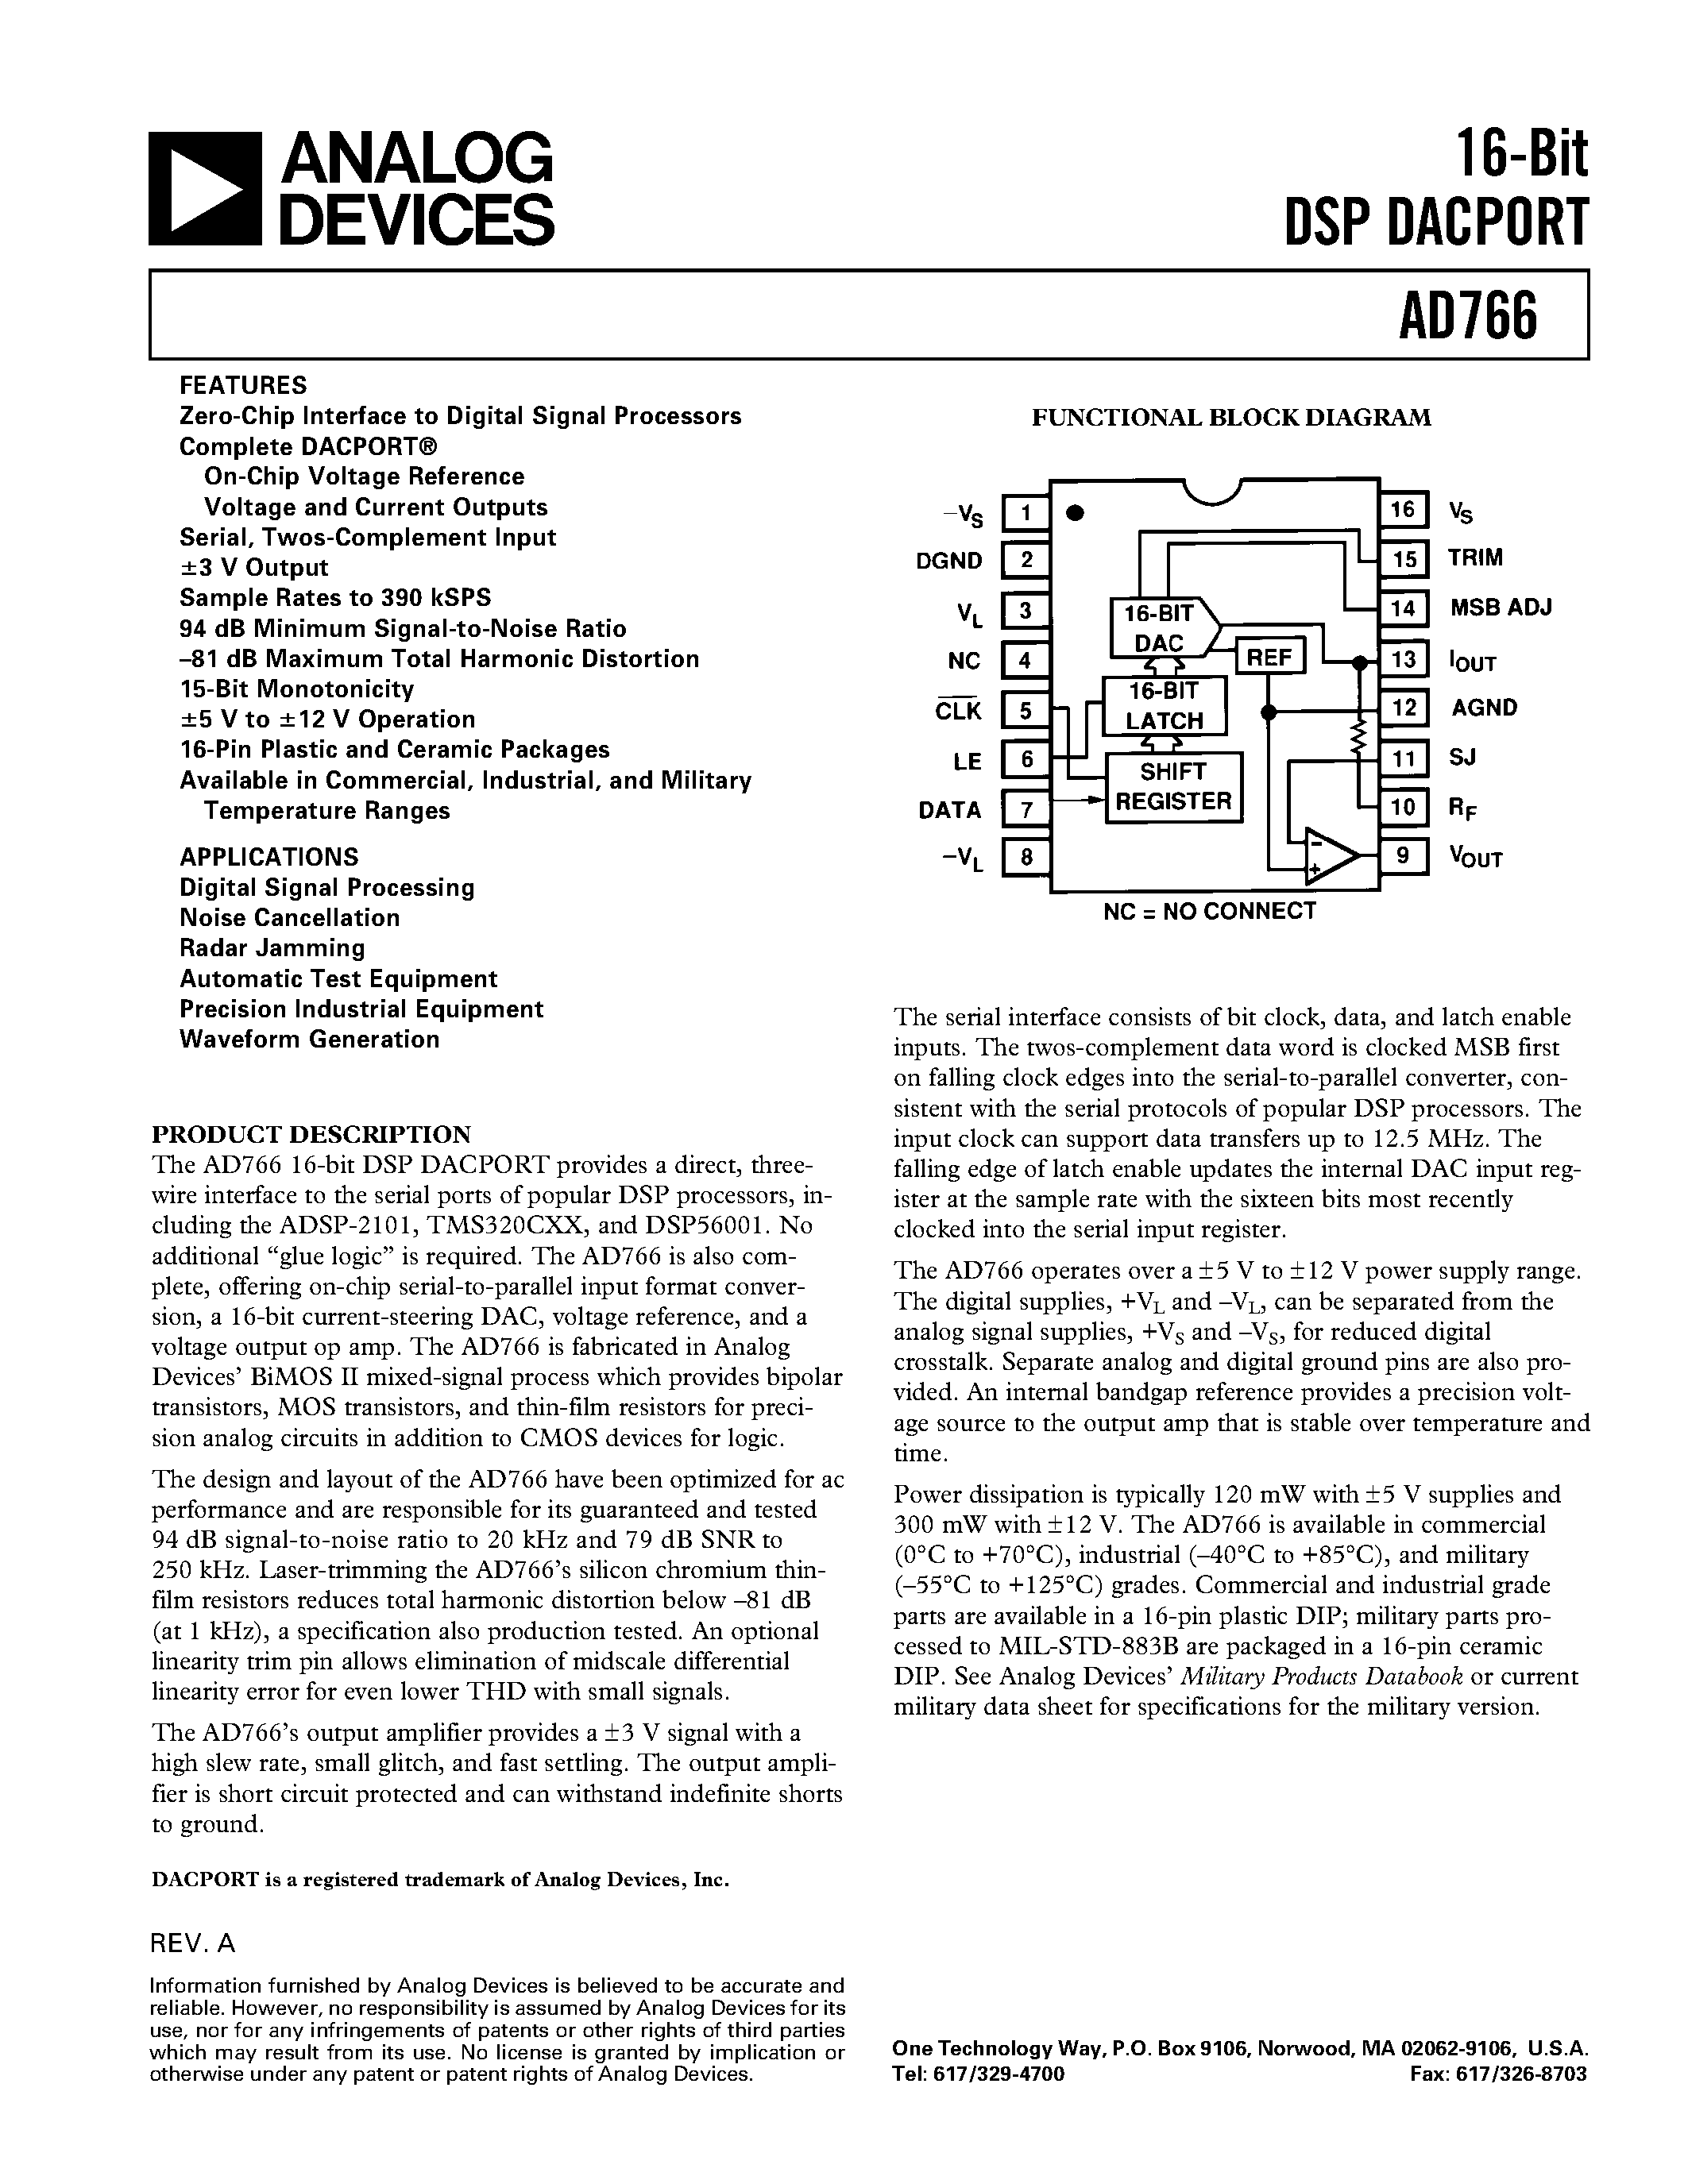 Даташит AD766 - 16-Bit DSP DACPORT страница 1